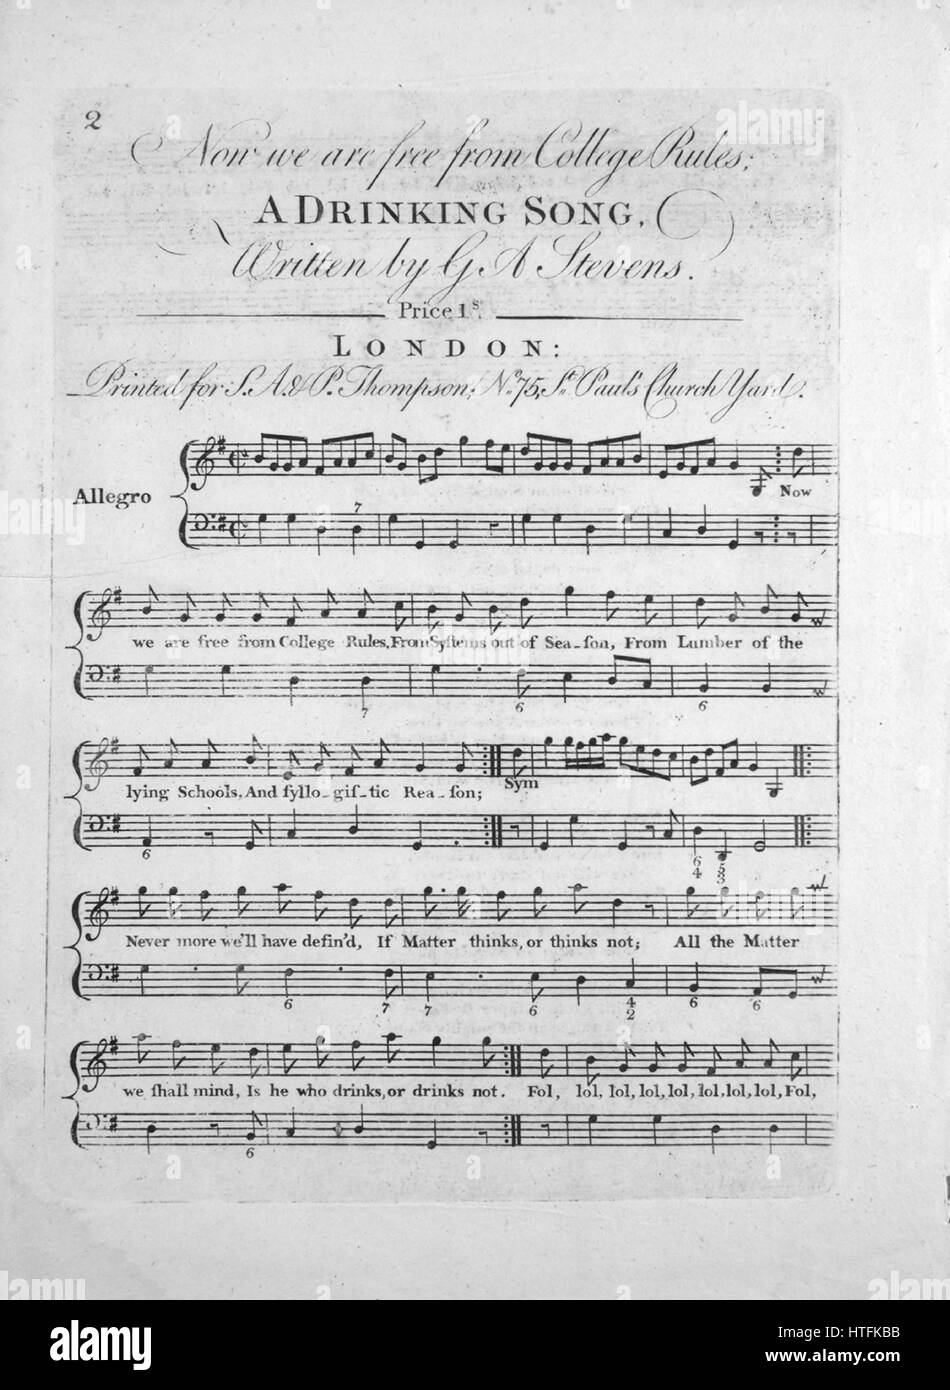 Sheet Music image de couverture de la chanson "Maintenant nous sommes  libres de l'Université Règlement une chanson potable', avec l'auteur  original "Lecture notes Écrit par GA Stevens', Royaume-Uni, 1900. L'éditeur  est répertorié